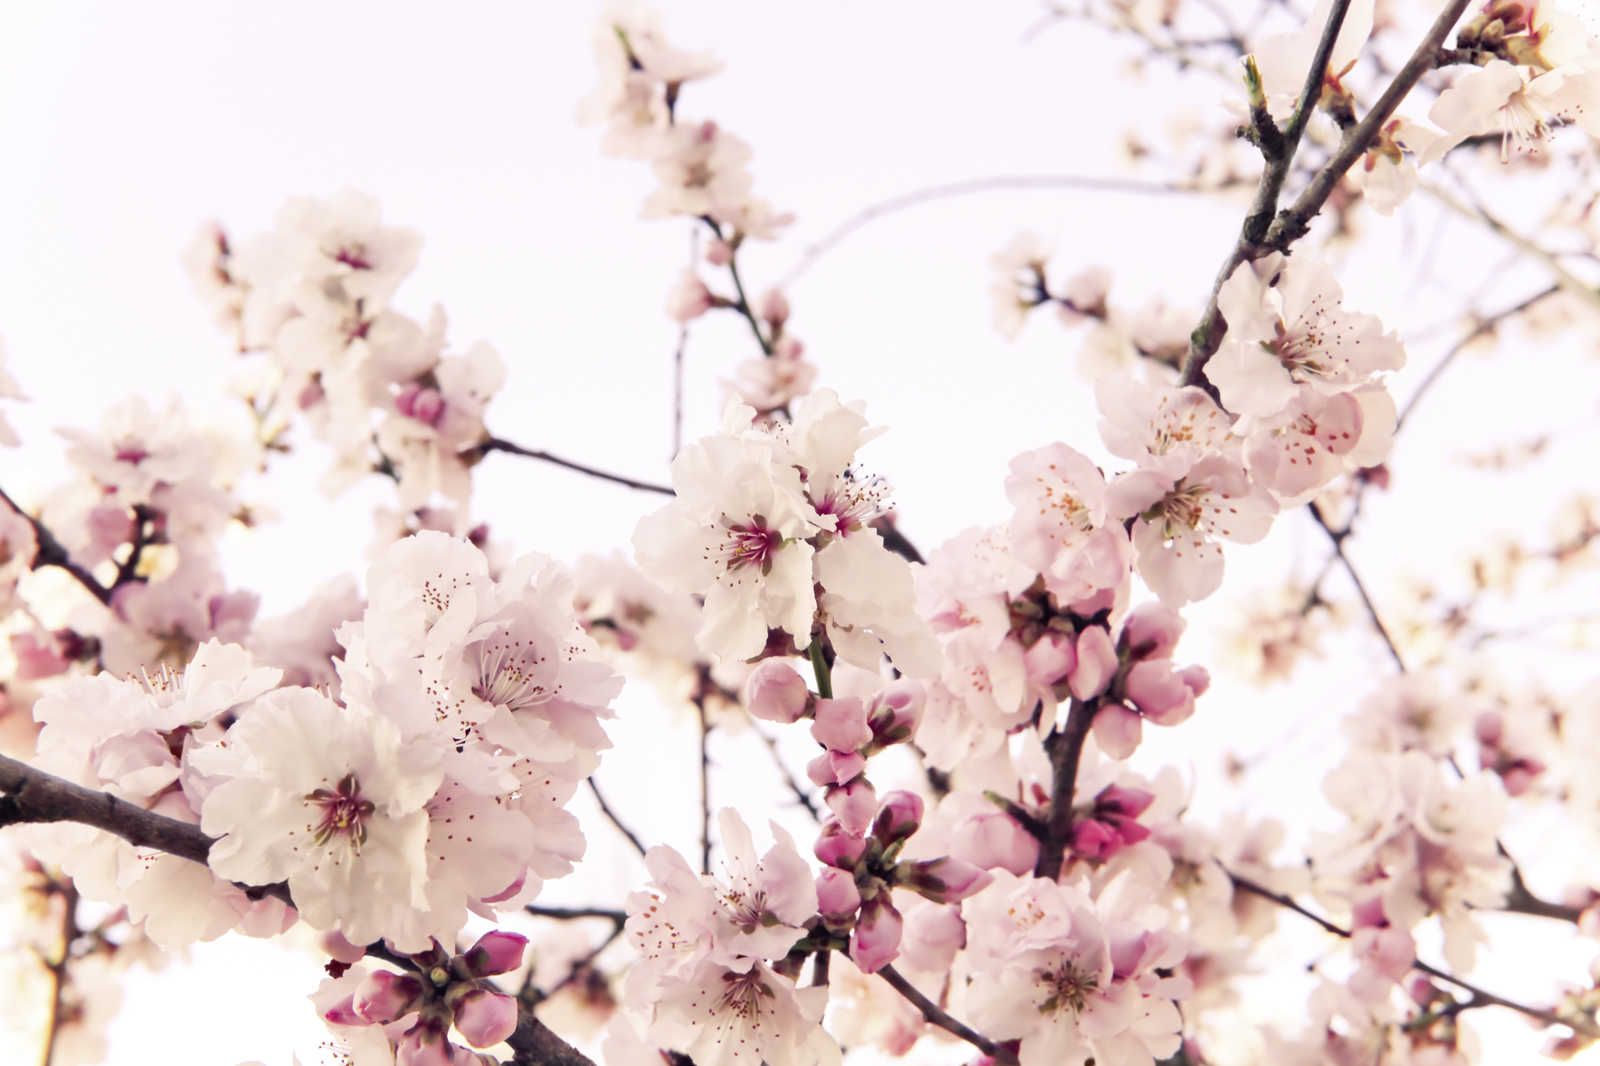             Naturel toile avec des fleurs de cerisier - 0,90 m x 0,60 m
        